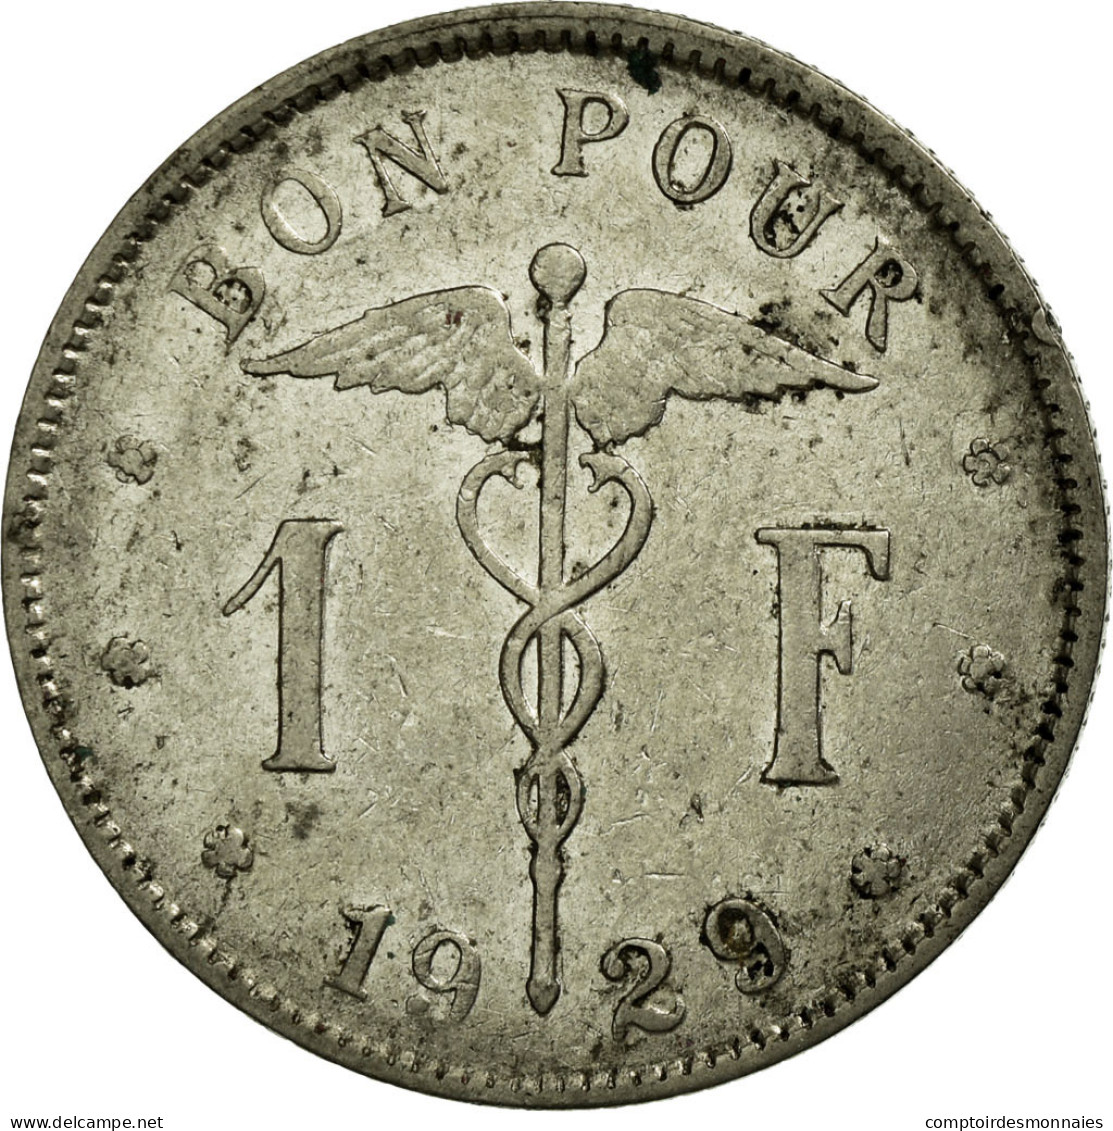 Monnaie, Belgique, Franc, 1929, TTB, Nickel, KM:89 - 1 Franc